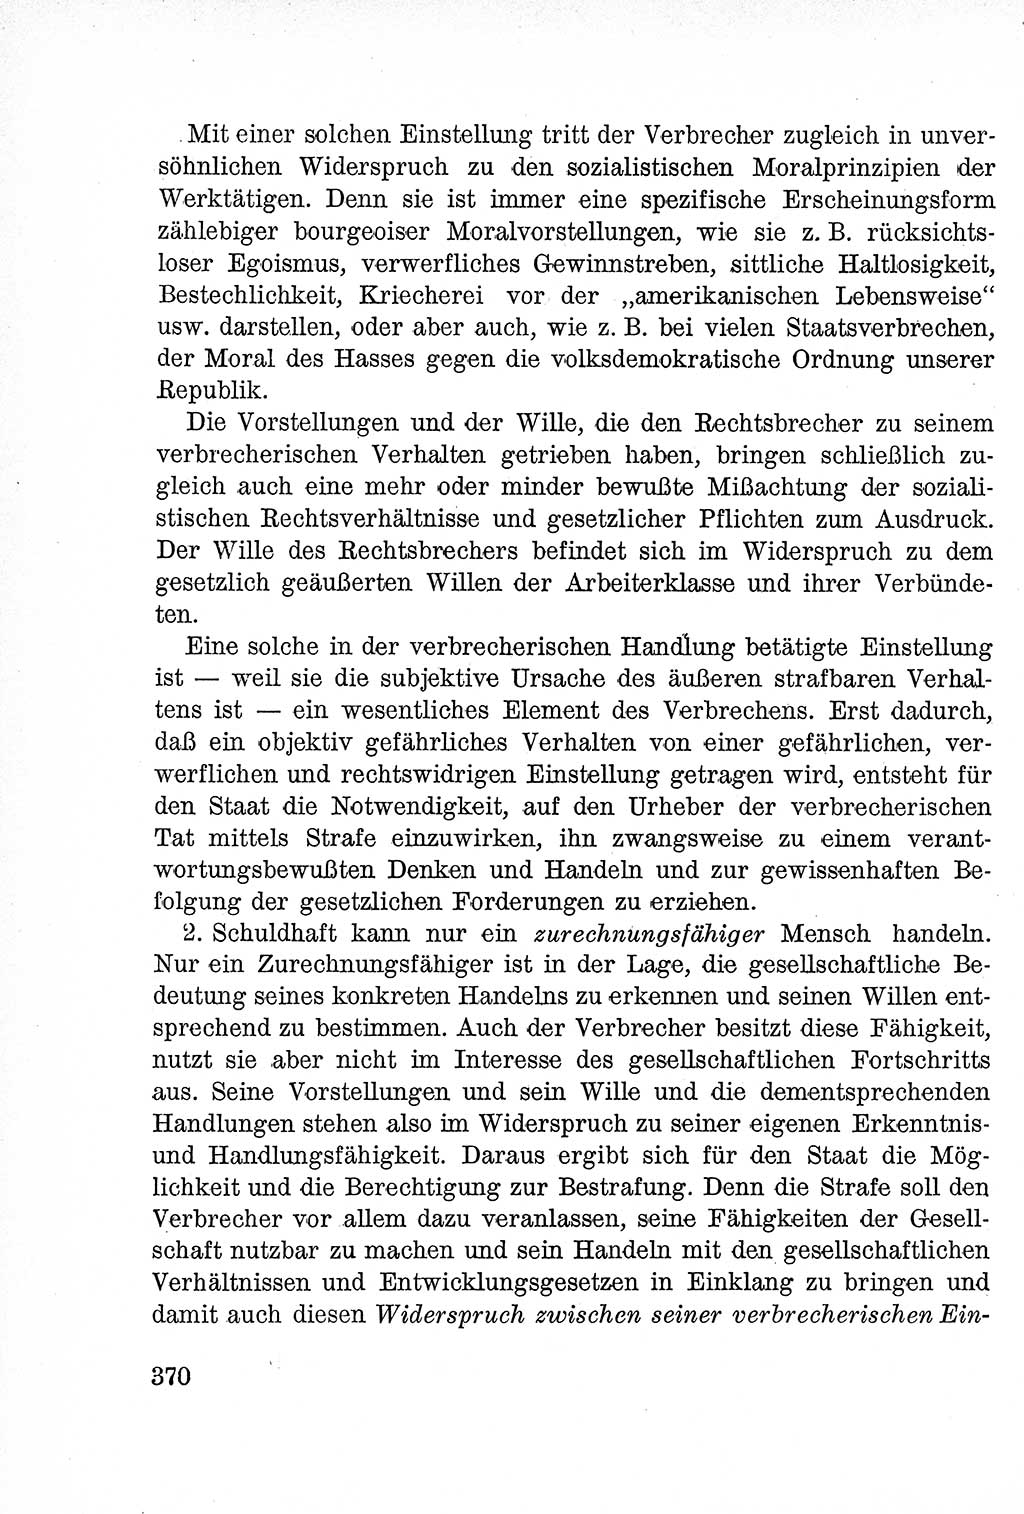 Lehrbuch des Strafrechts der Deutschen Demokratischen Republik (DDR), Allgemeiner Teil 1957, Seite 370 (Lb. Strafr. DDR AT 1957, S. 370)